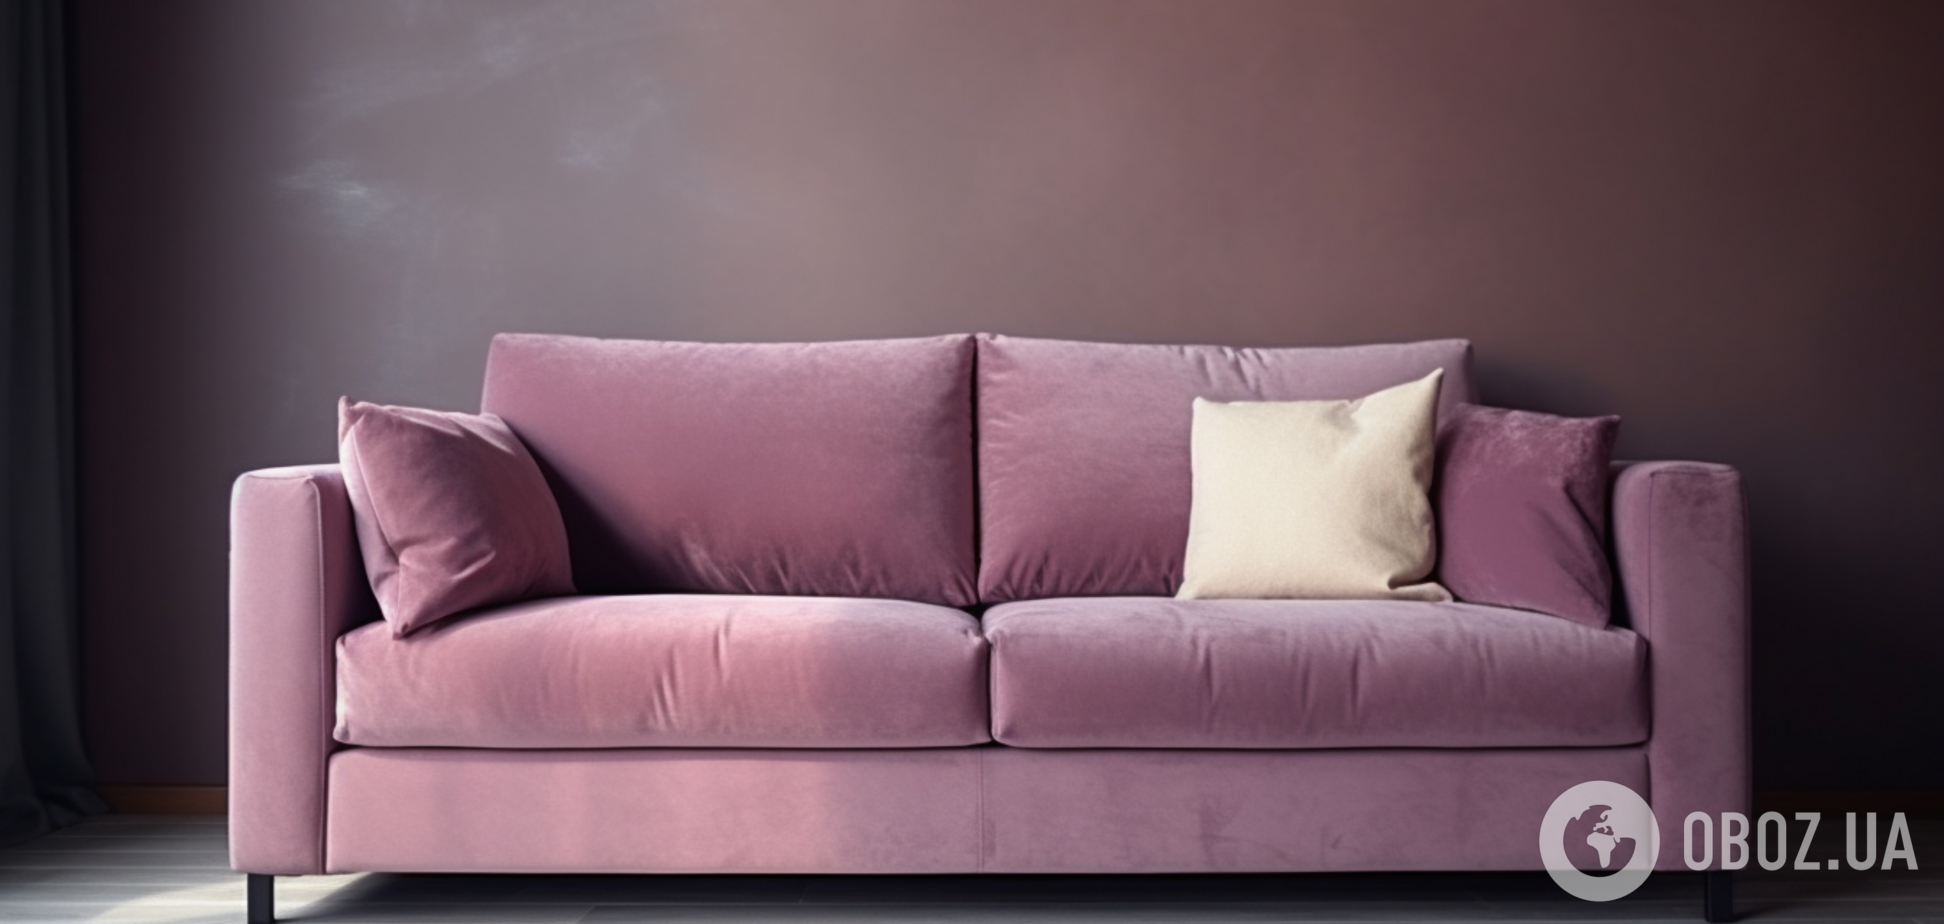 Як почистити оббивку дивана: методи для дуже брудних меблів